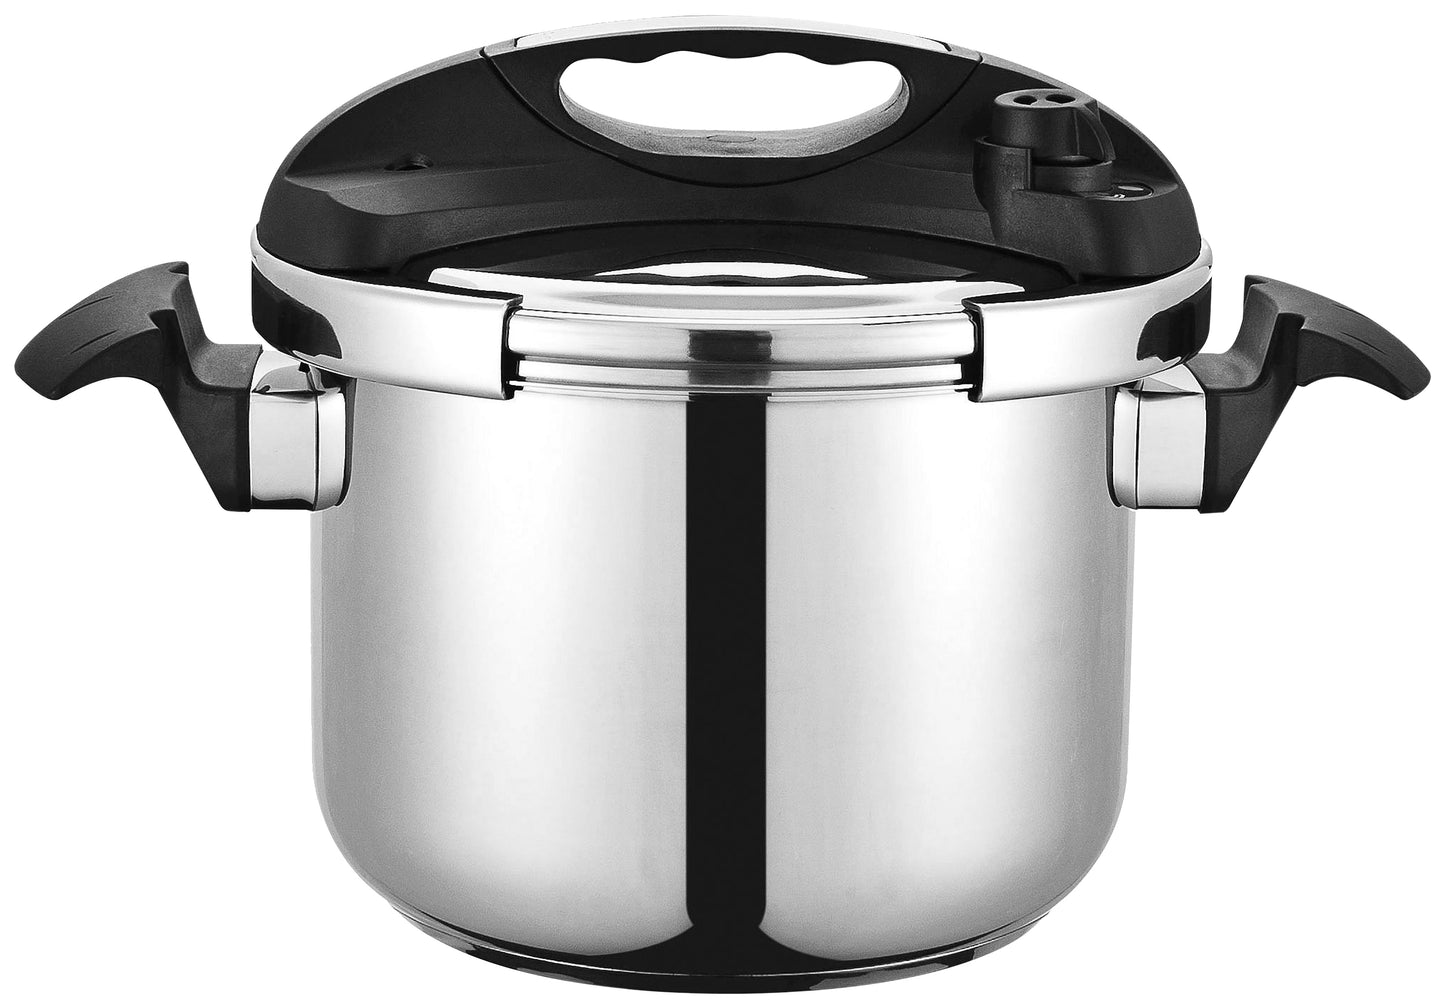 MBR bene casa 33868 5.3-quart stainless steel pressure cooker.